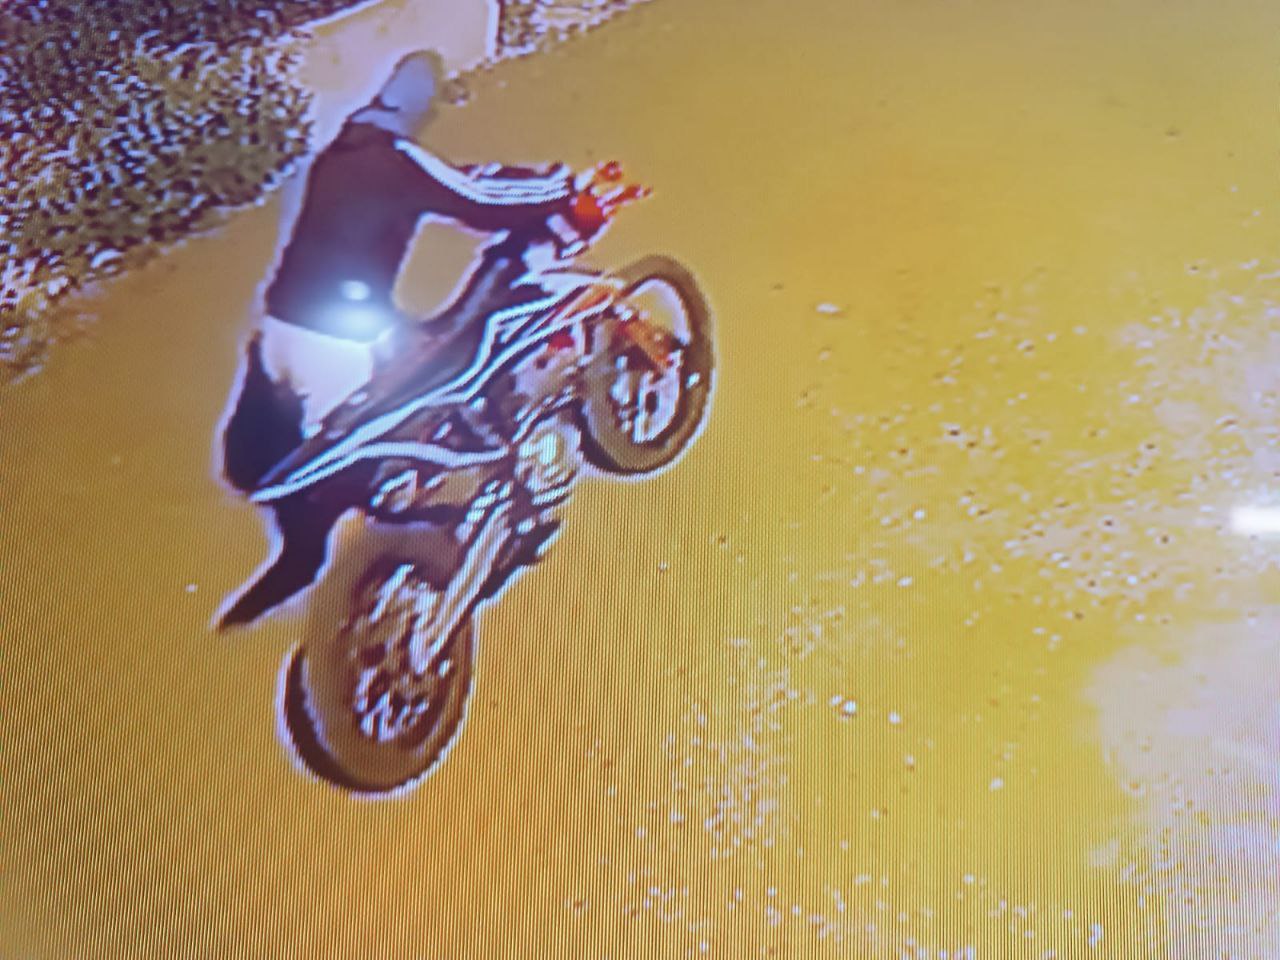 В Саратове 15-летний подросток украл мотоцикл, чтобы покататься, и не смог его завести